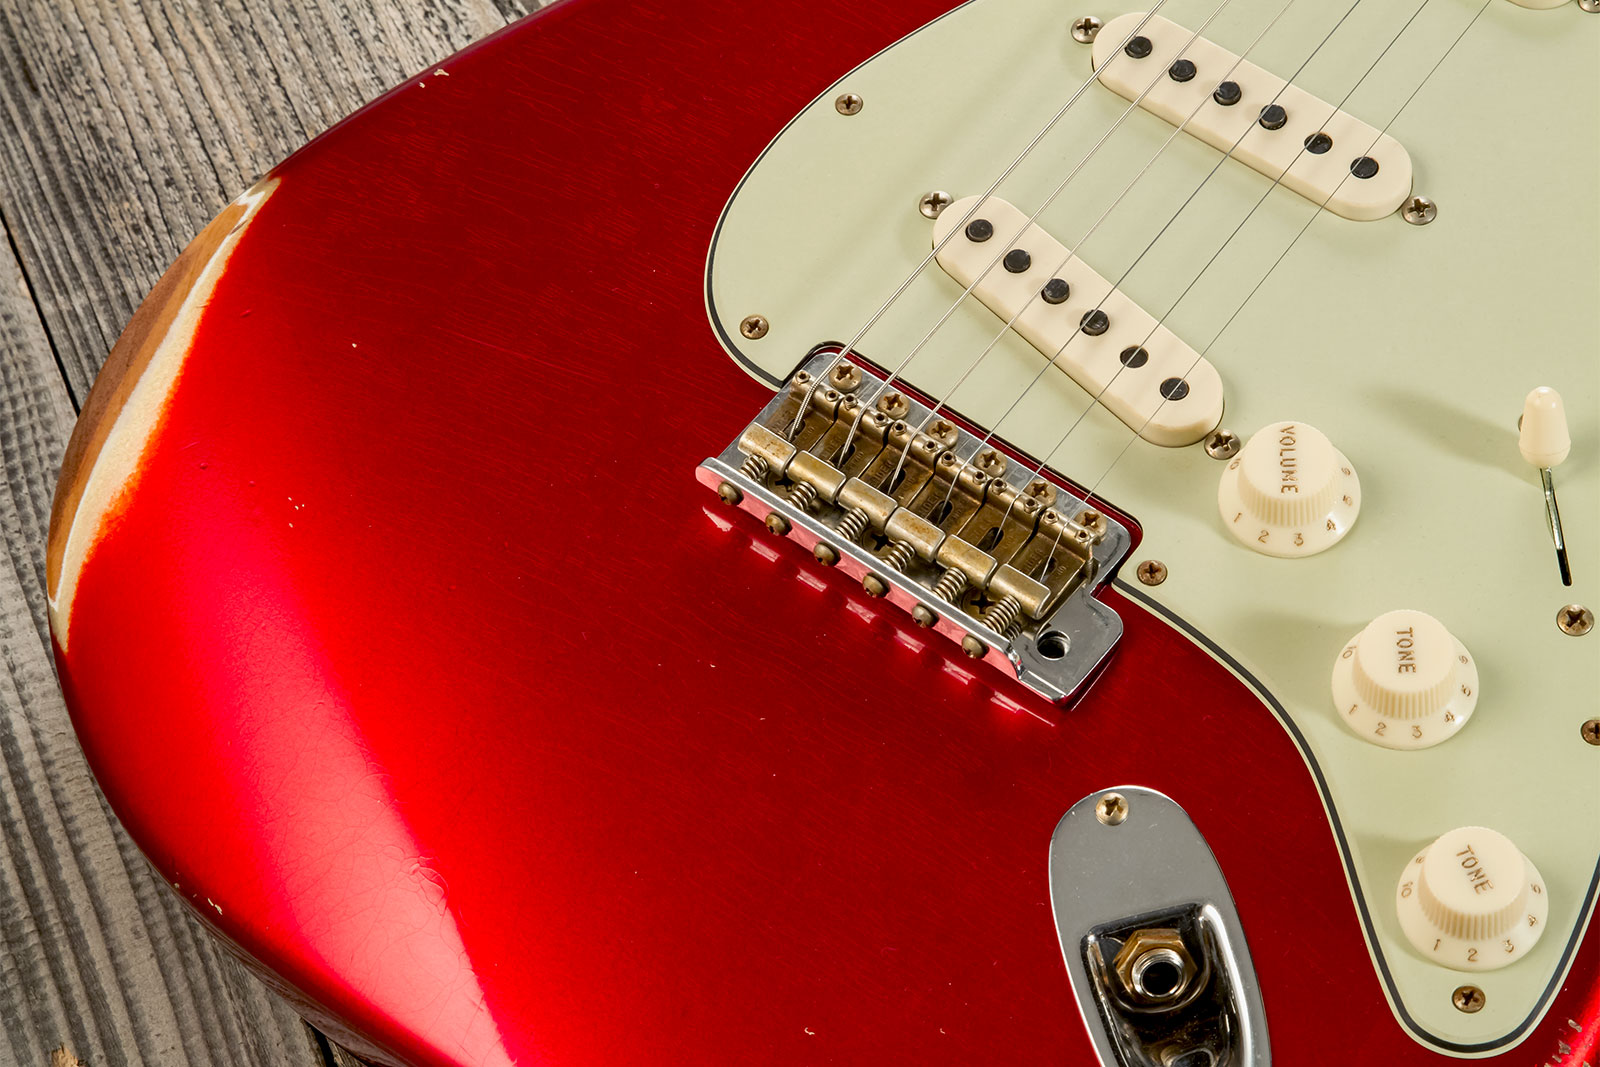 Fender Custom Shop Strat 1963 3s Trem Rw #cz579406 - Relic Aged Candy Apple Red - Elektrische gitaar in Str-vorm - Variation 4